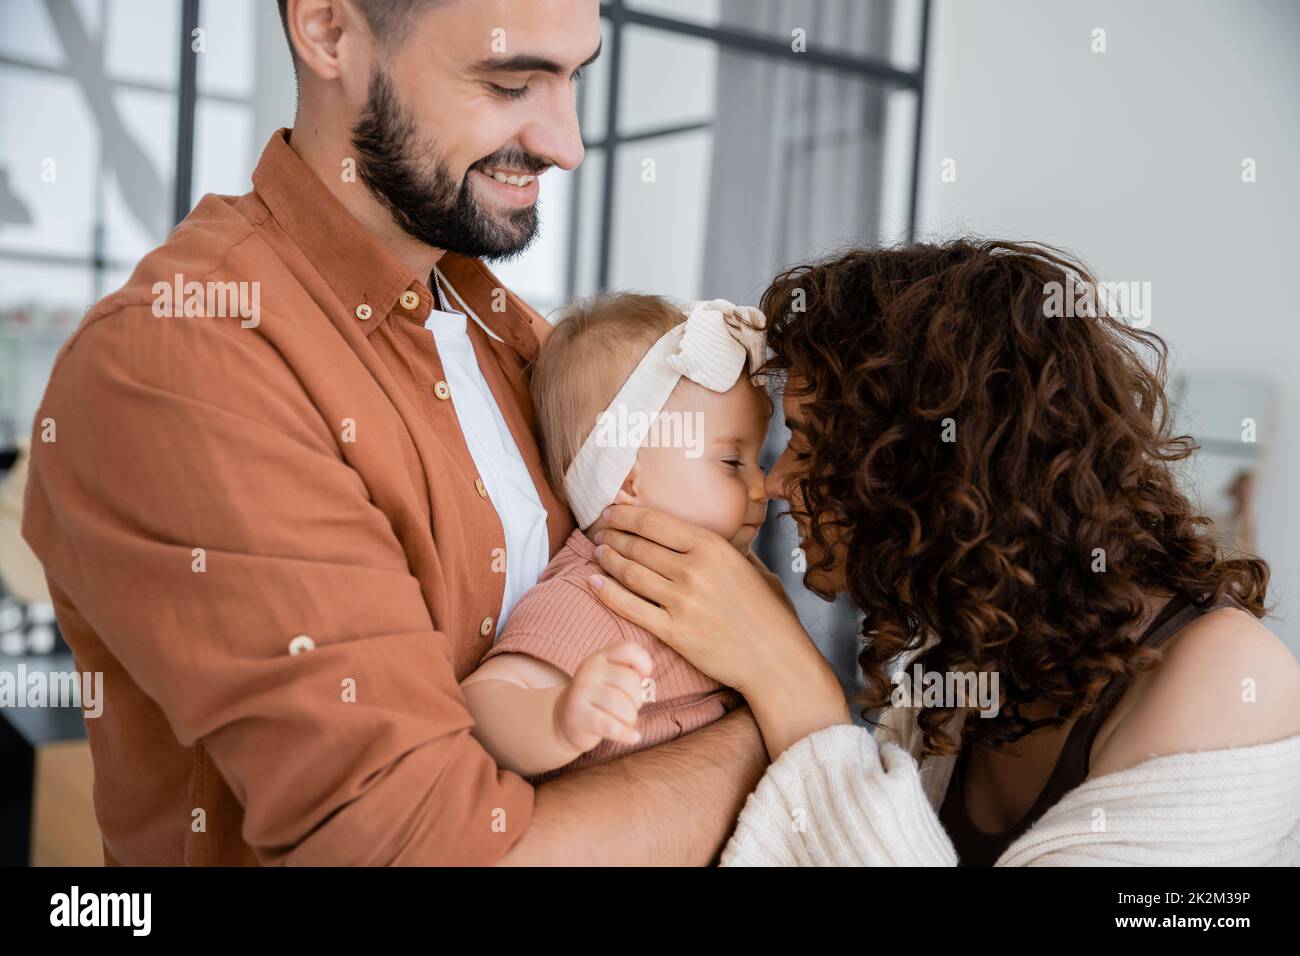 rizado madre tocando la nariz de bebé hija en la diadema cerca de marido alegre en casa, imagen de archivo Foto de stock